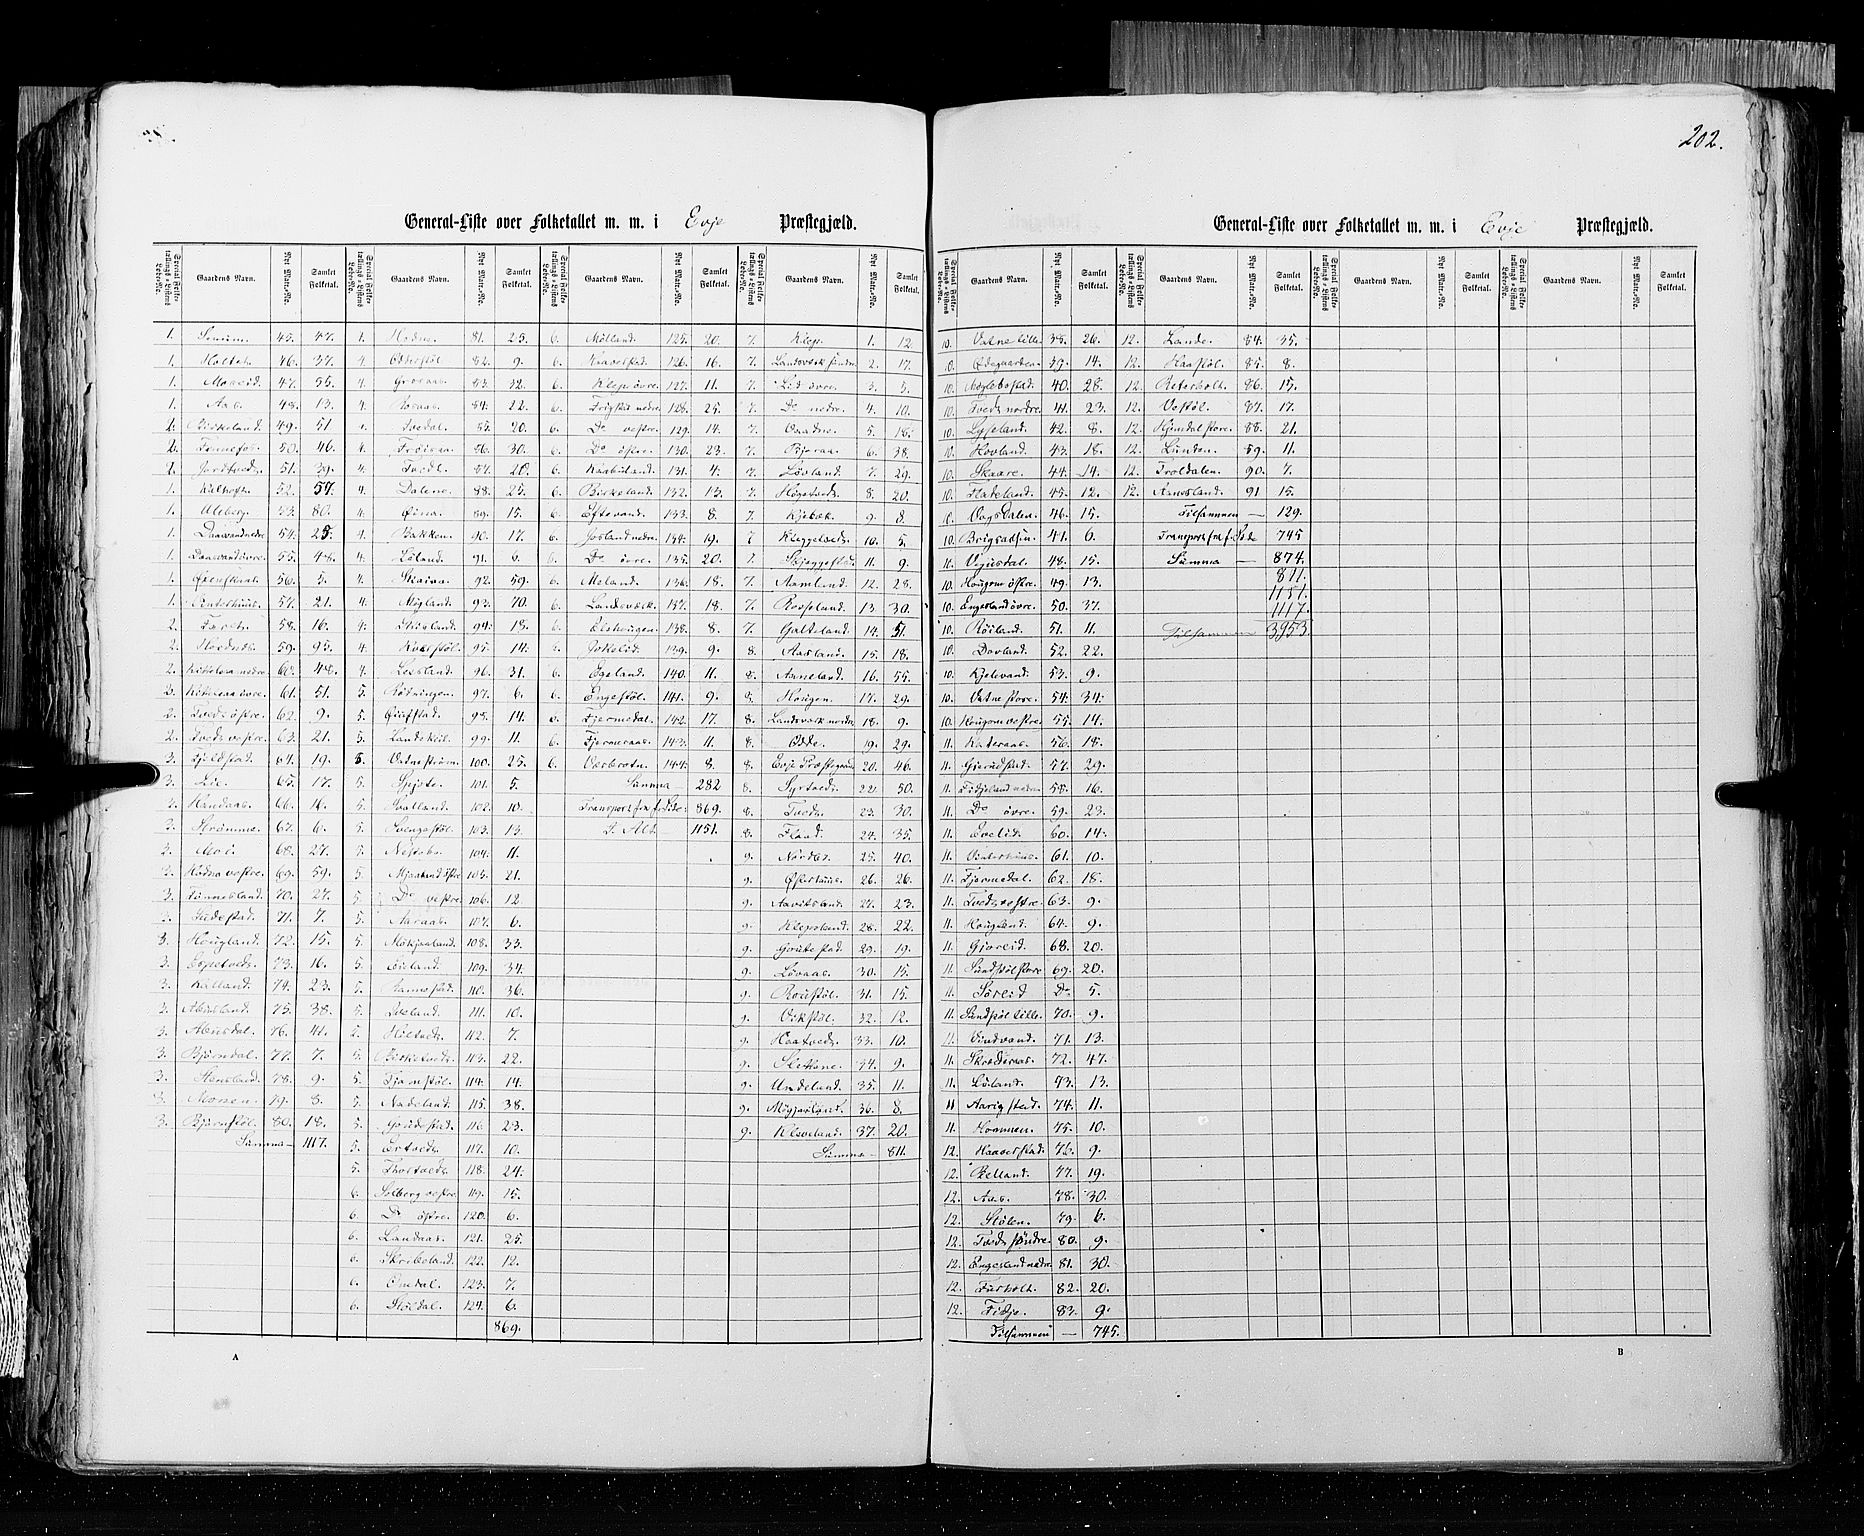 RA, Census 1855, vol. 3: Bratsberg amt, Nedenes amt og Lister og Mandal amt, 1855, p. 202